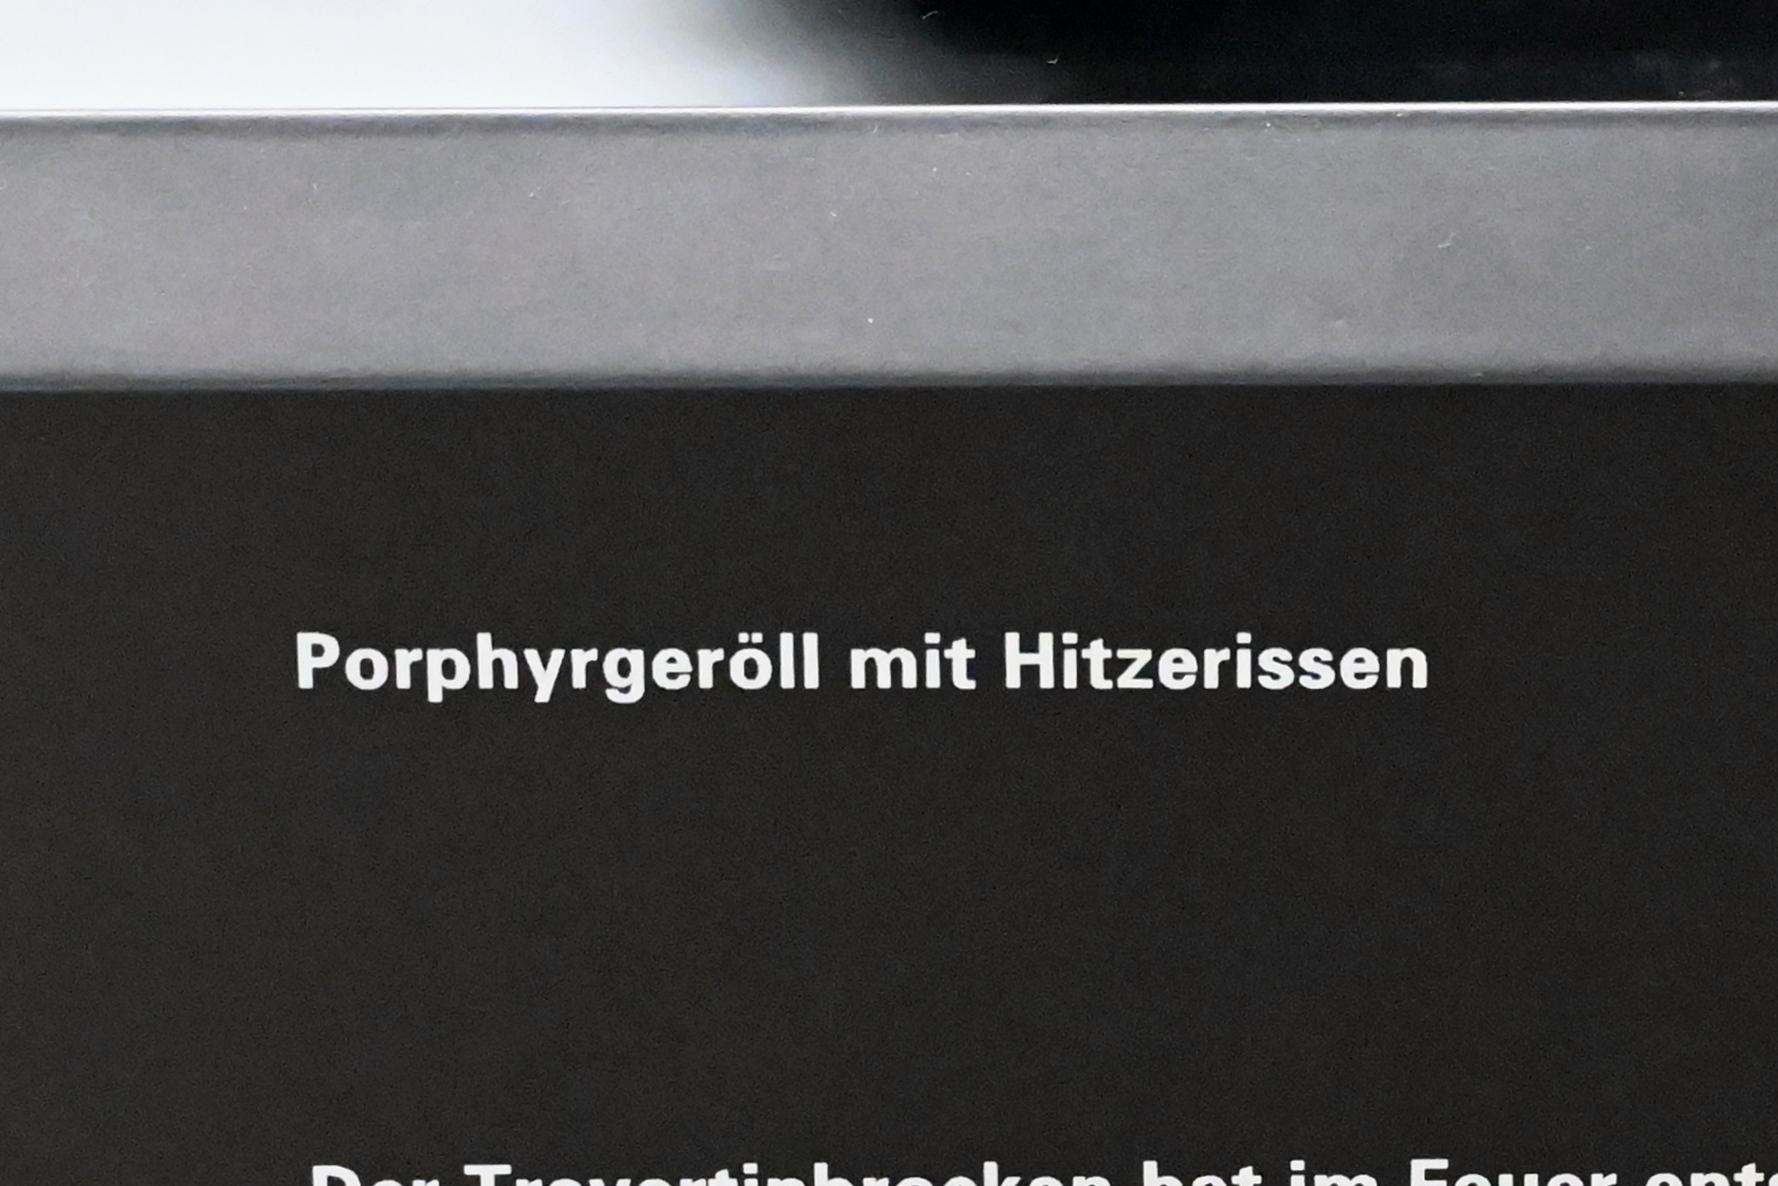 Porphyrgeröll mit Hitzerissen, Reinsdorf-Warmzeit, 370000 v. Chr., 370000 v. Chr., Bild 2/2